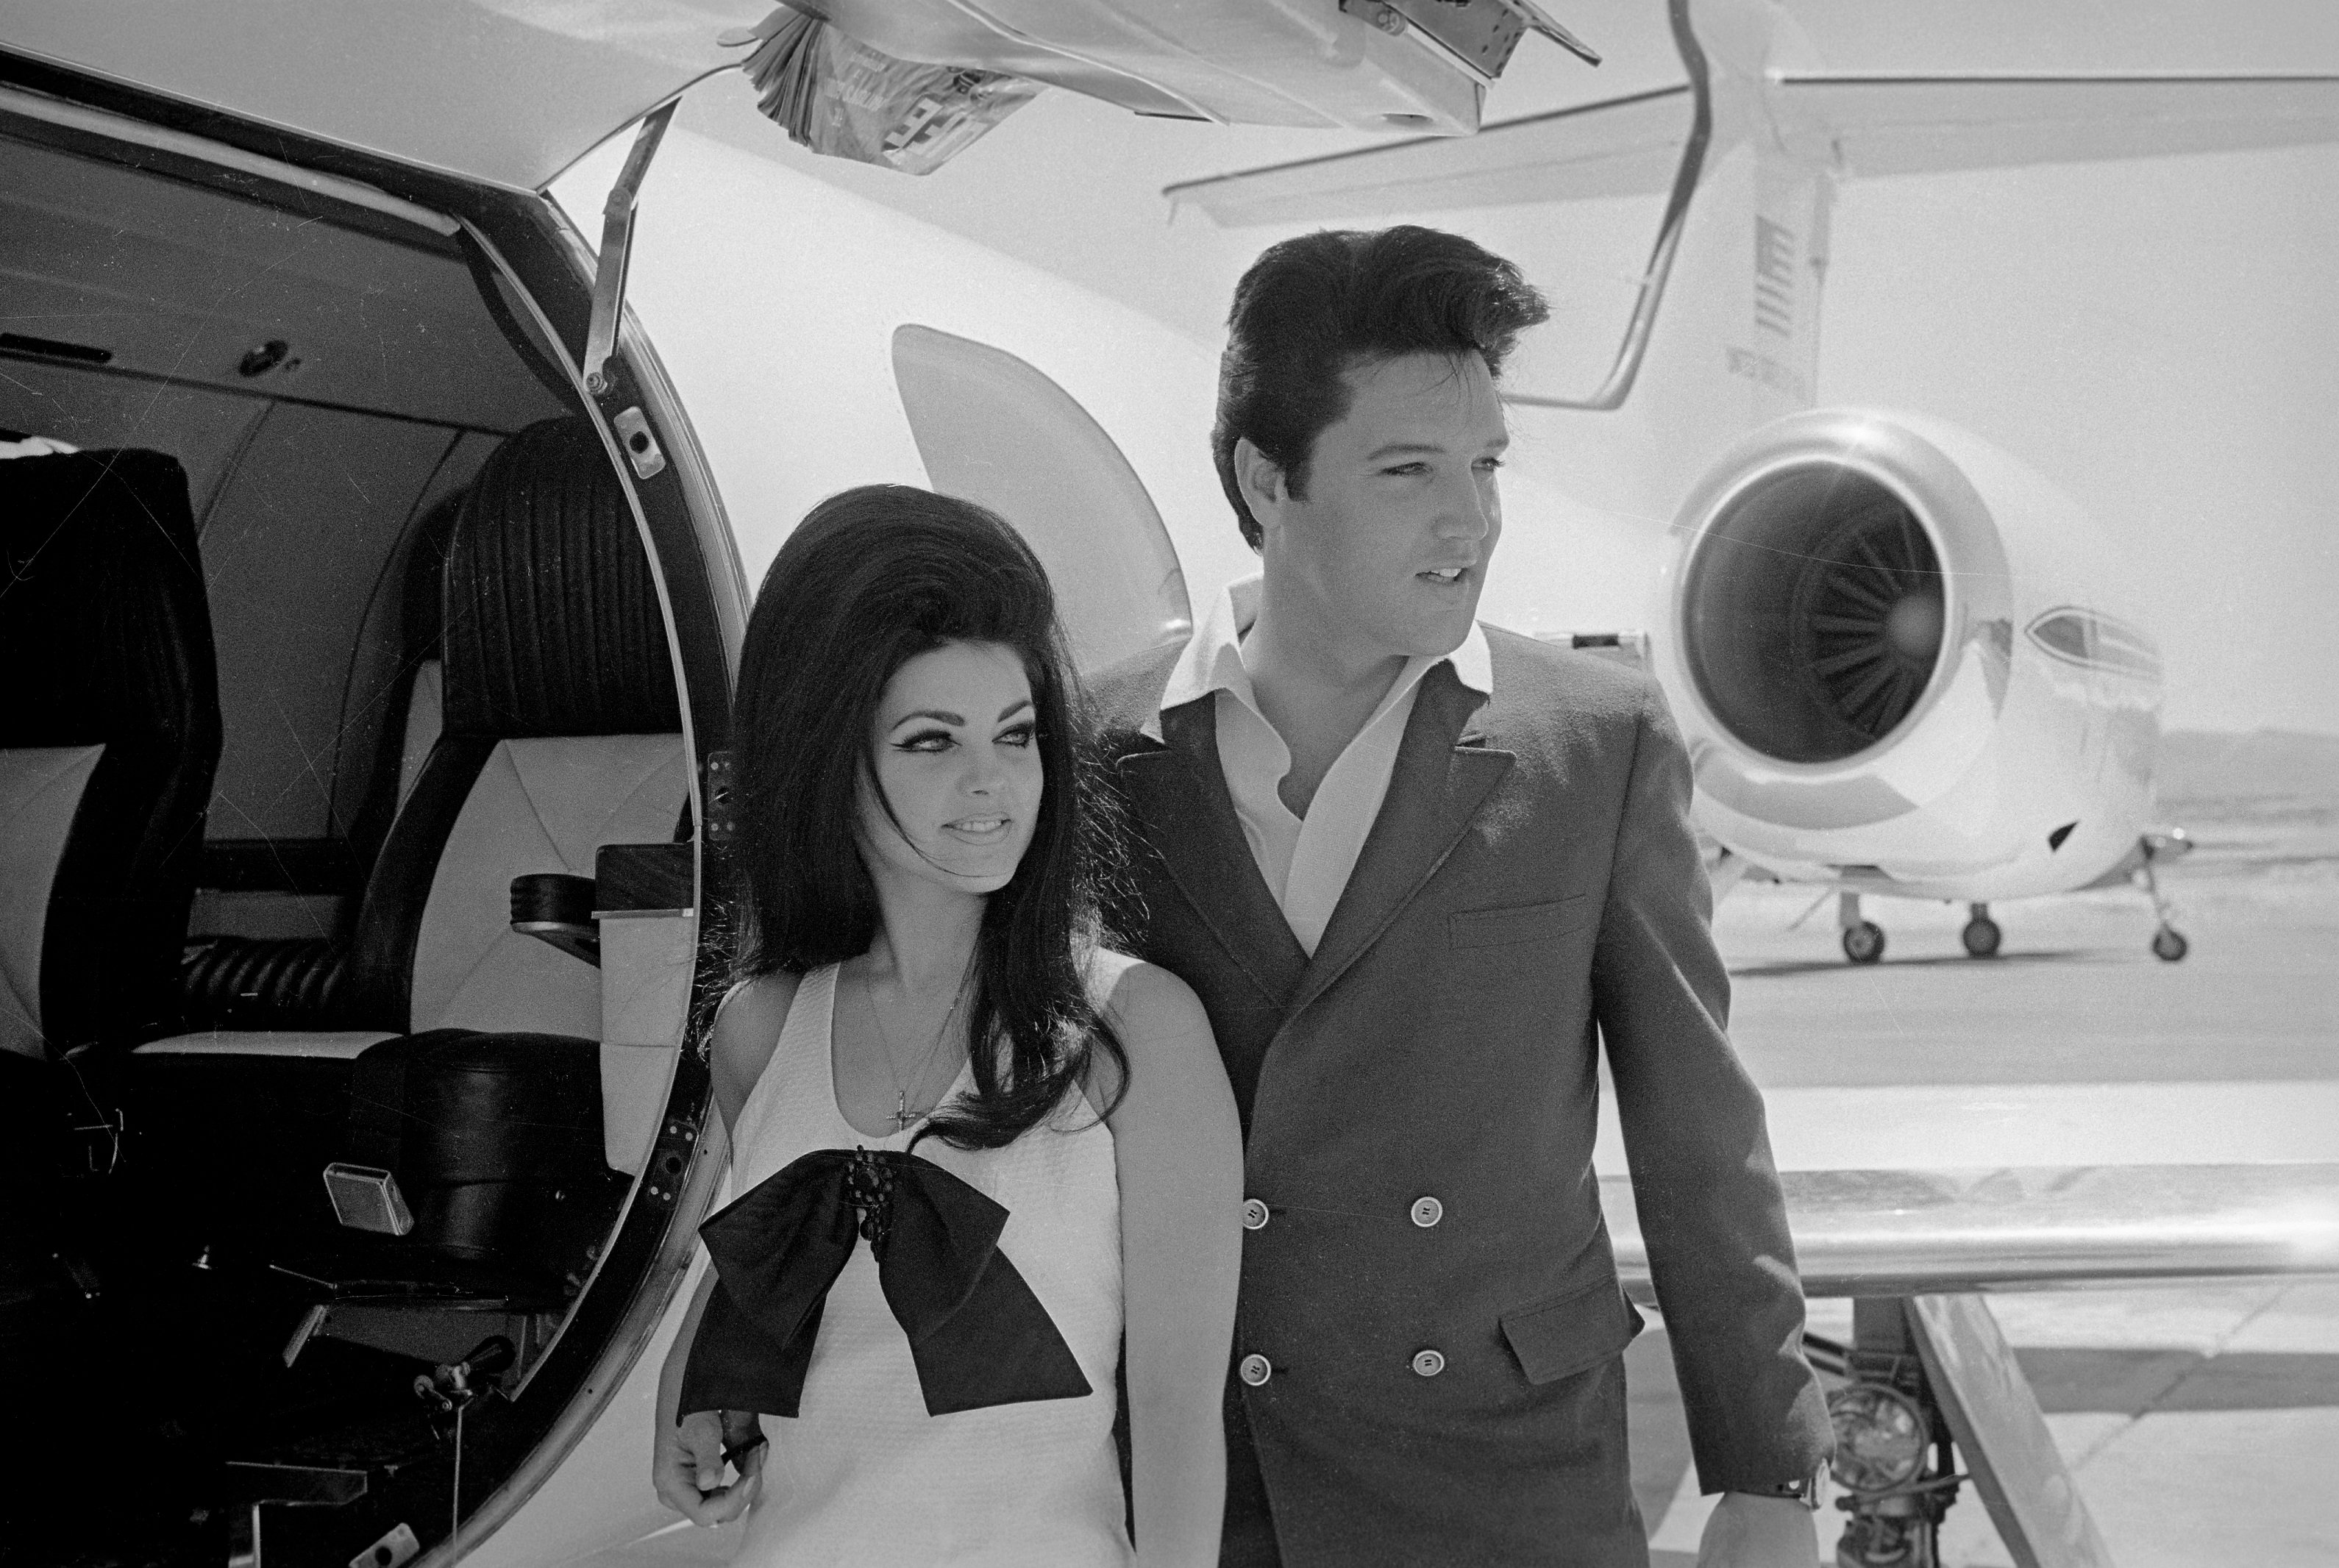 Priscilla Presley and Elvis Presley during the "Suspicious Minds" era